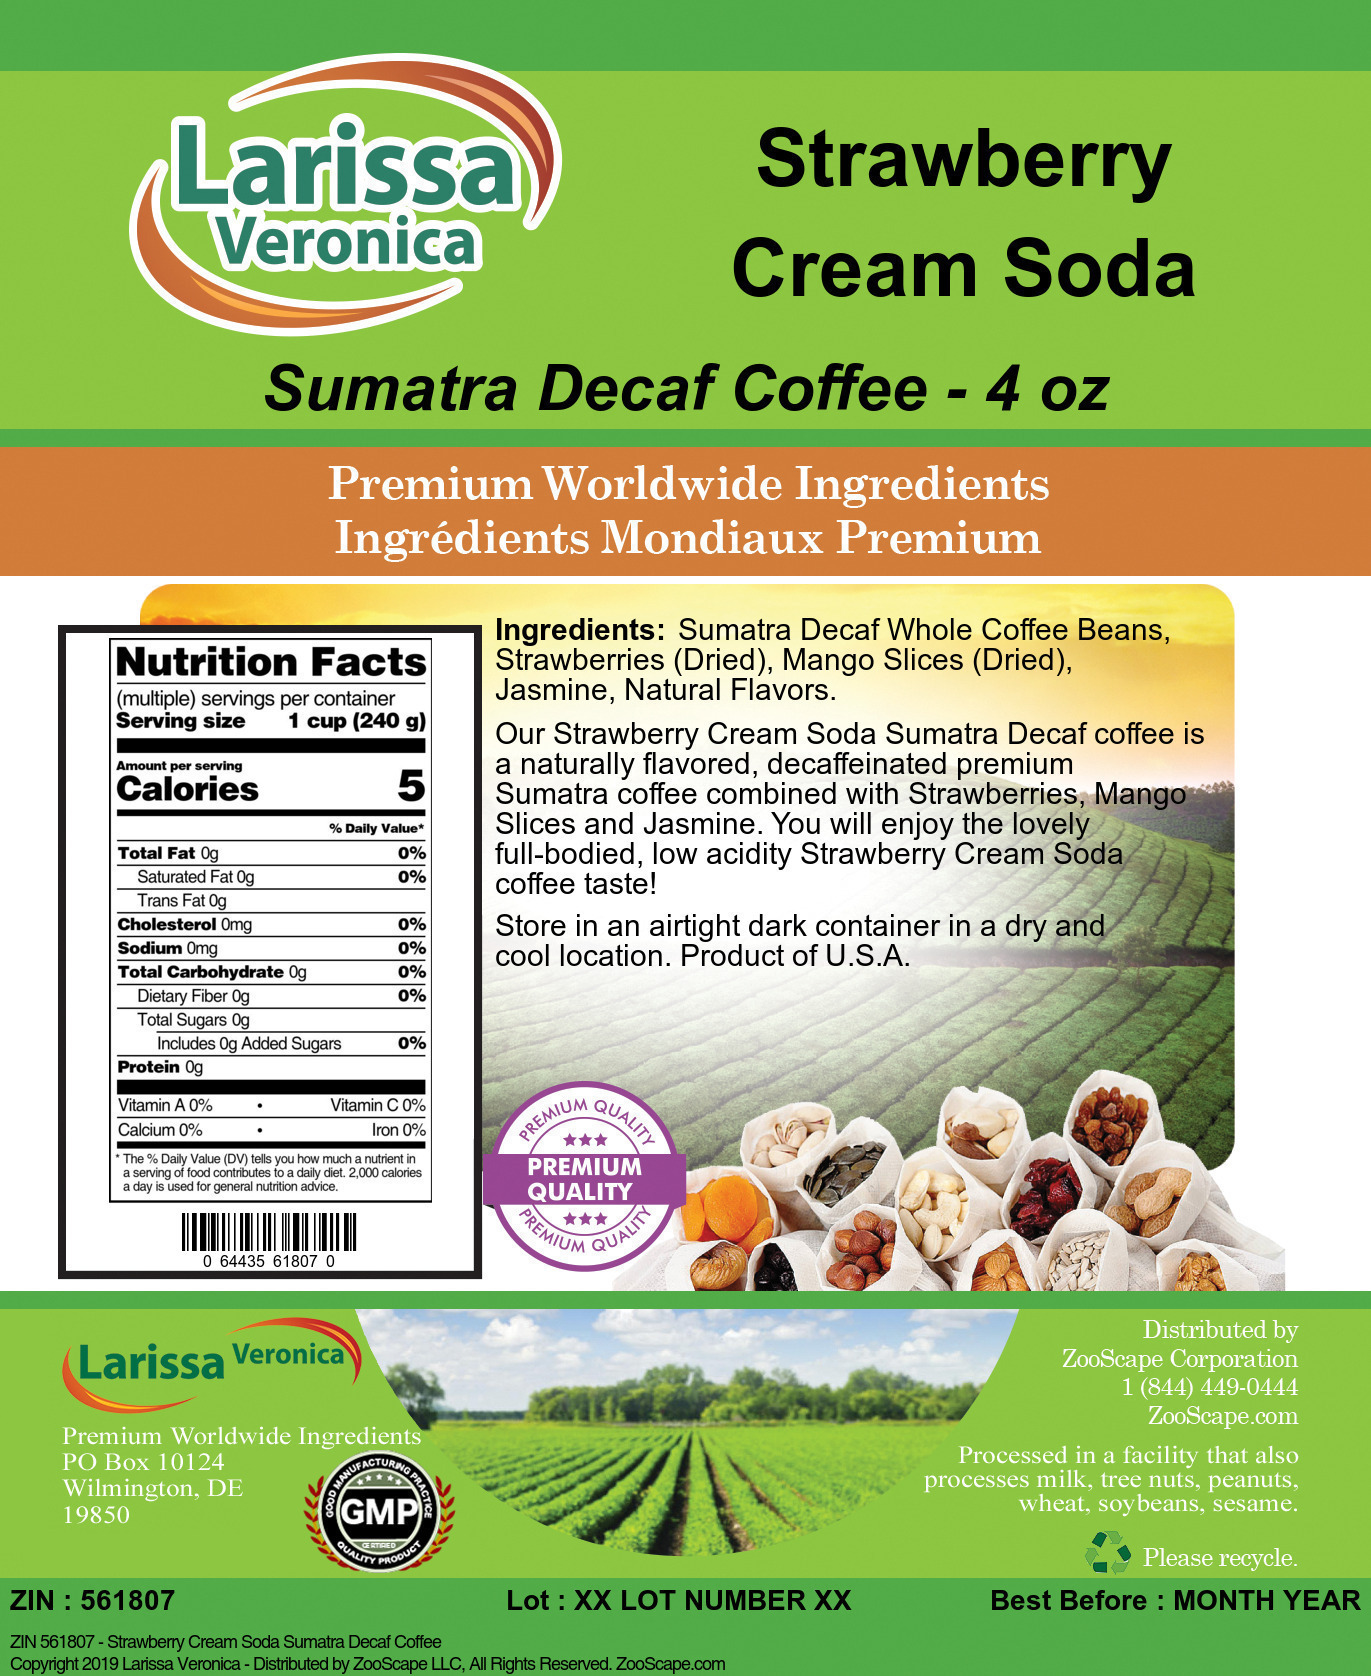 Strawberry Cream Soda Sumatra Decaf Coffee - Label